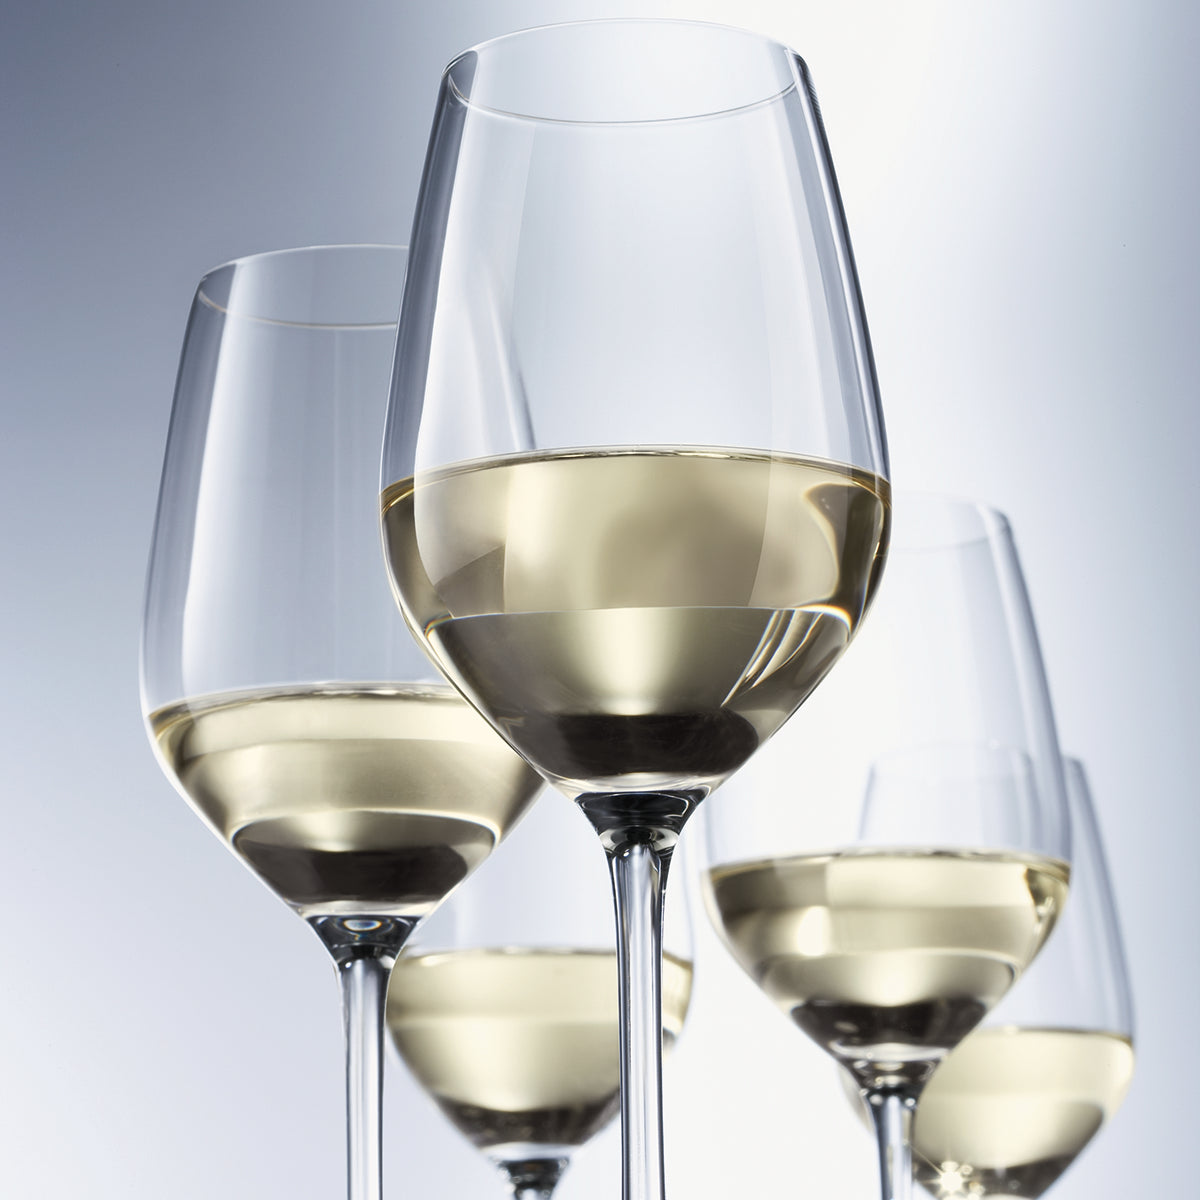 Five filled Fortessa Forte White Wine glasses